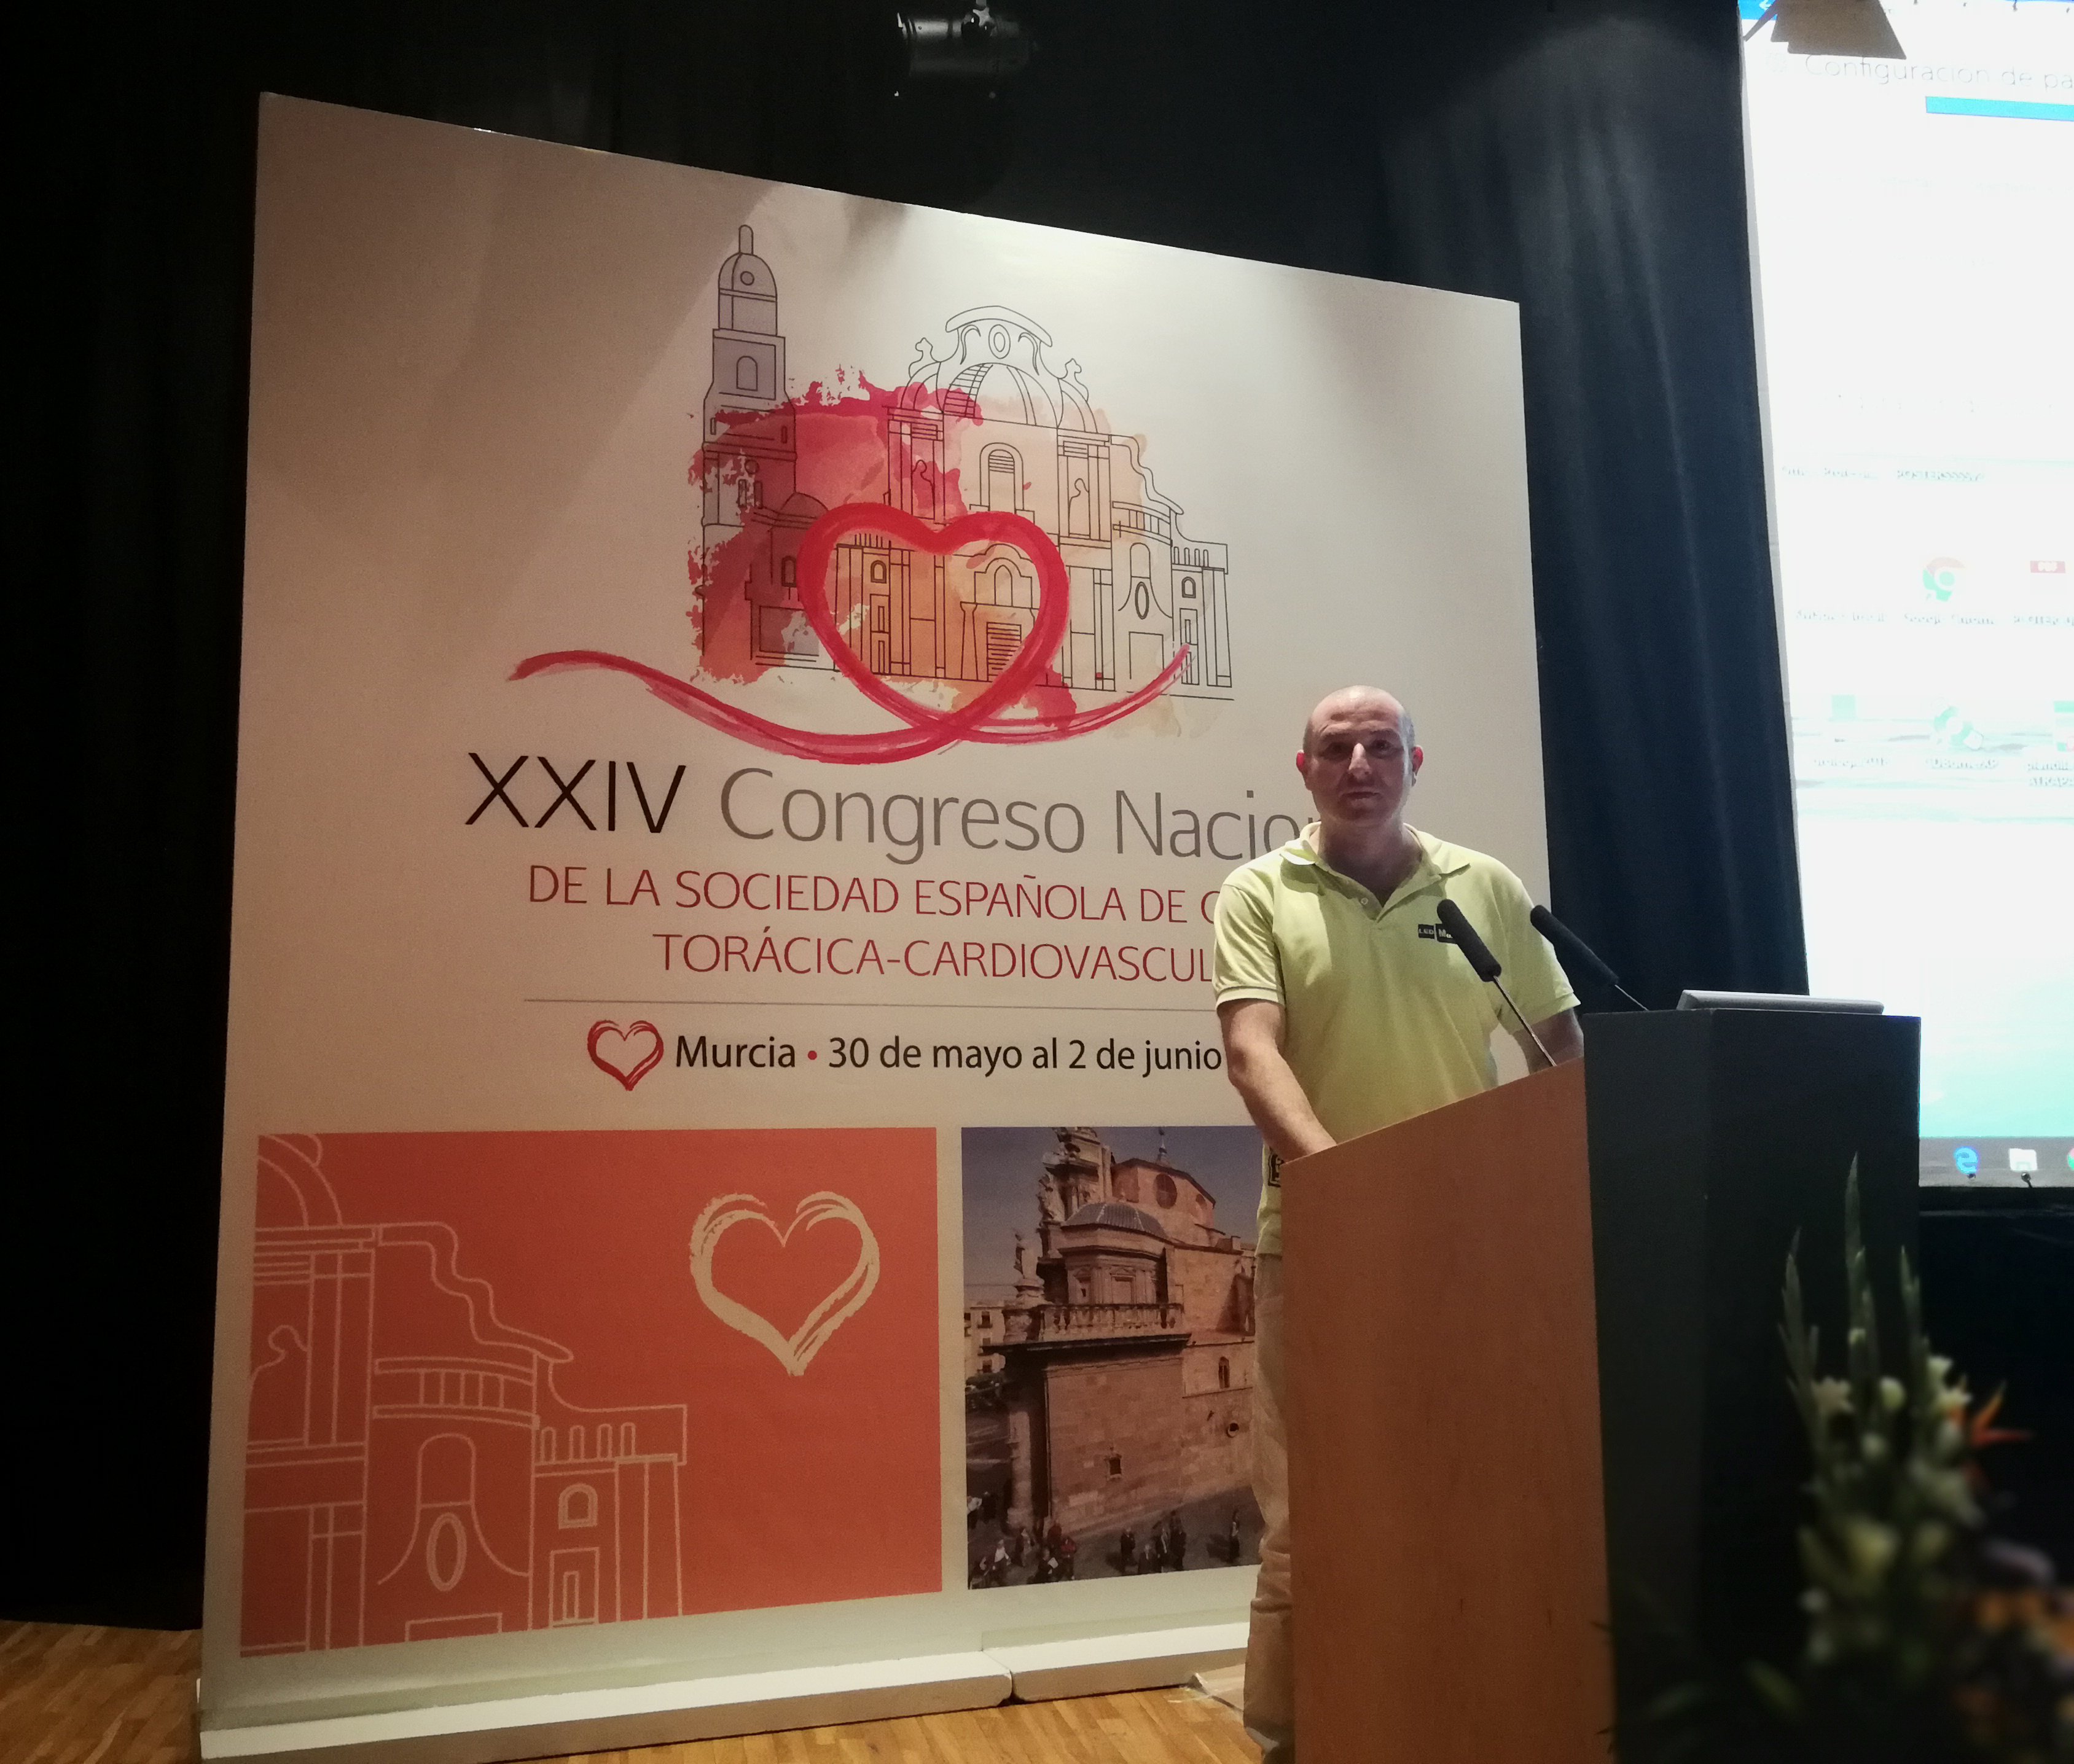 Congreso Nacional de la Sociedad Española de Cirugia